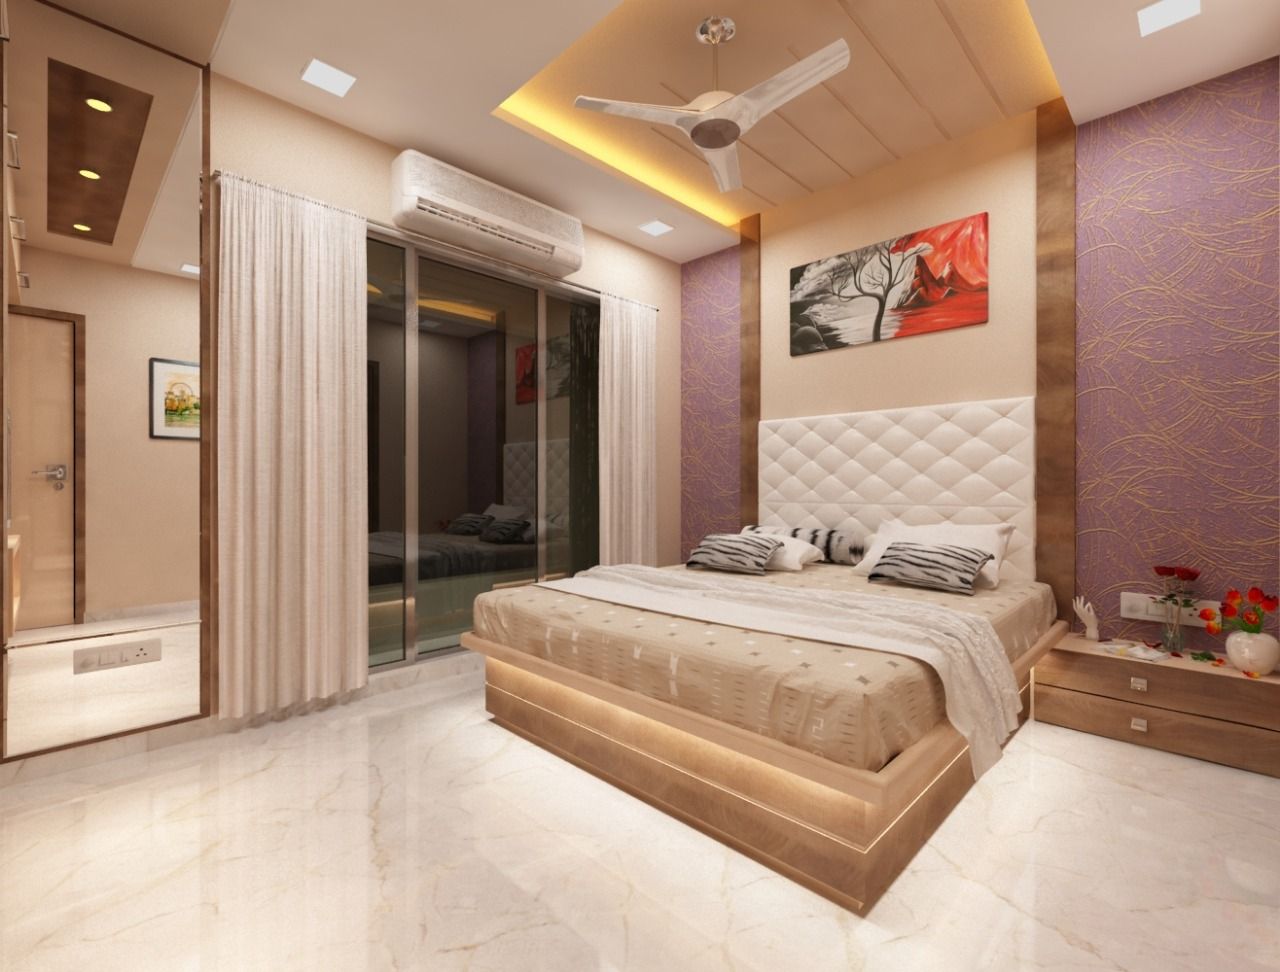 3BHK home design in Ghansoli, Mumbai , Square 4 Design & Build Square 4 Design & Build Kamar Tidur Modern